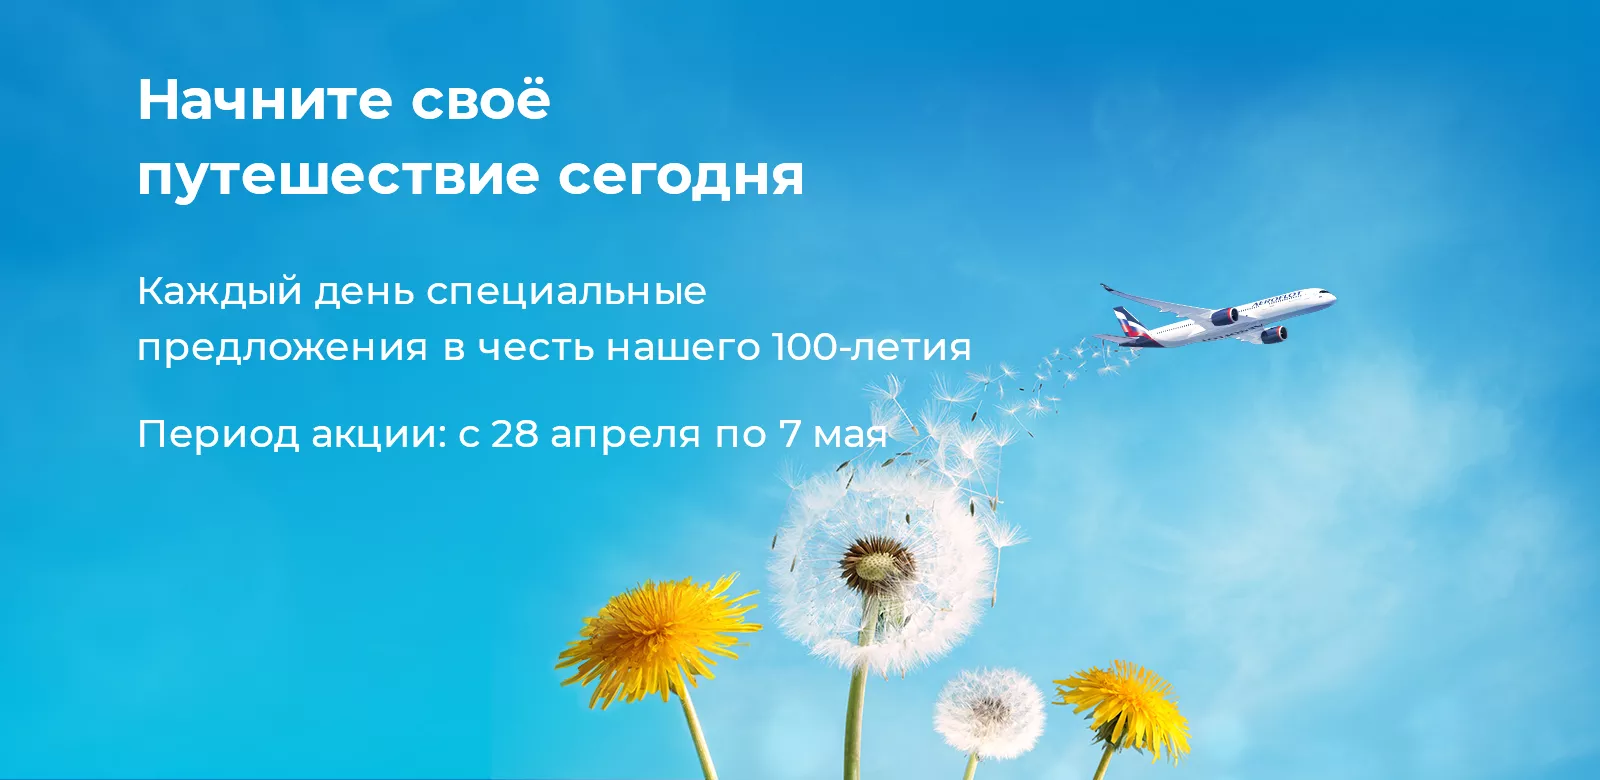 Купить авиабилеты на распродаже Аэрофлота с 28 апреля по 7 мая 2023 года